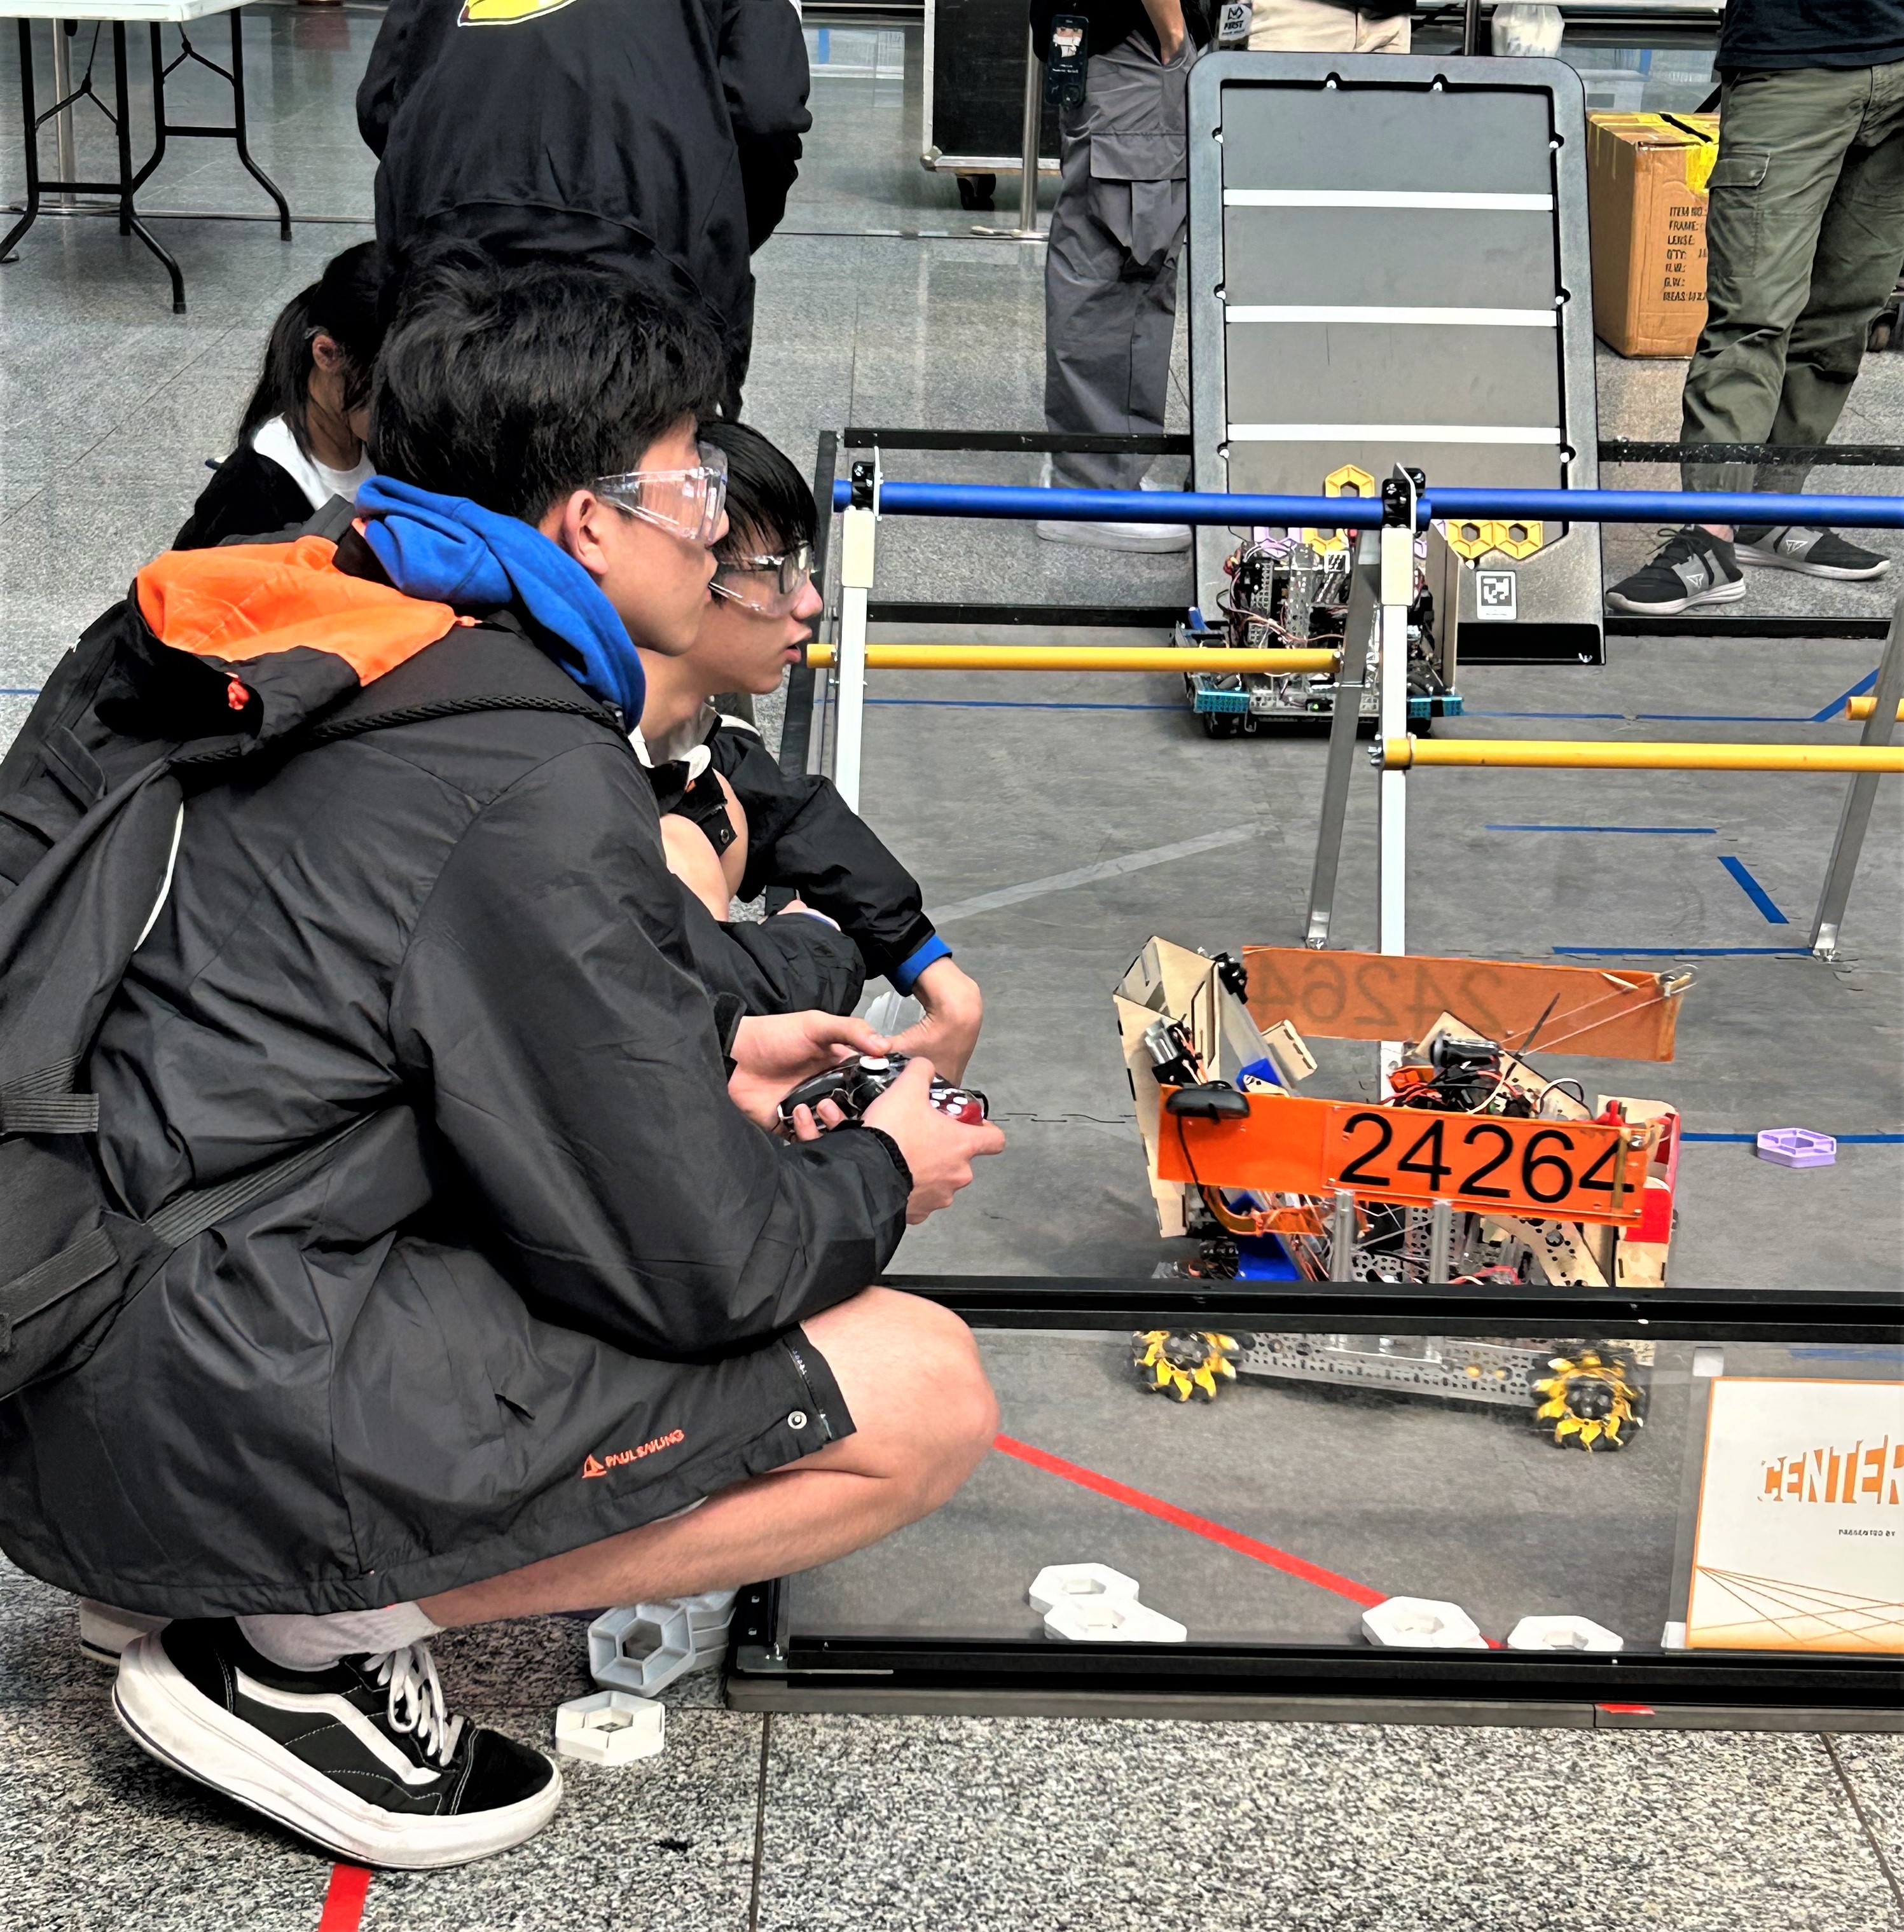 安康高中FTC機器人團隊操作手陳盛緯同學操作機器人(FTC24264)任務